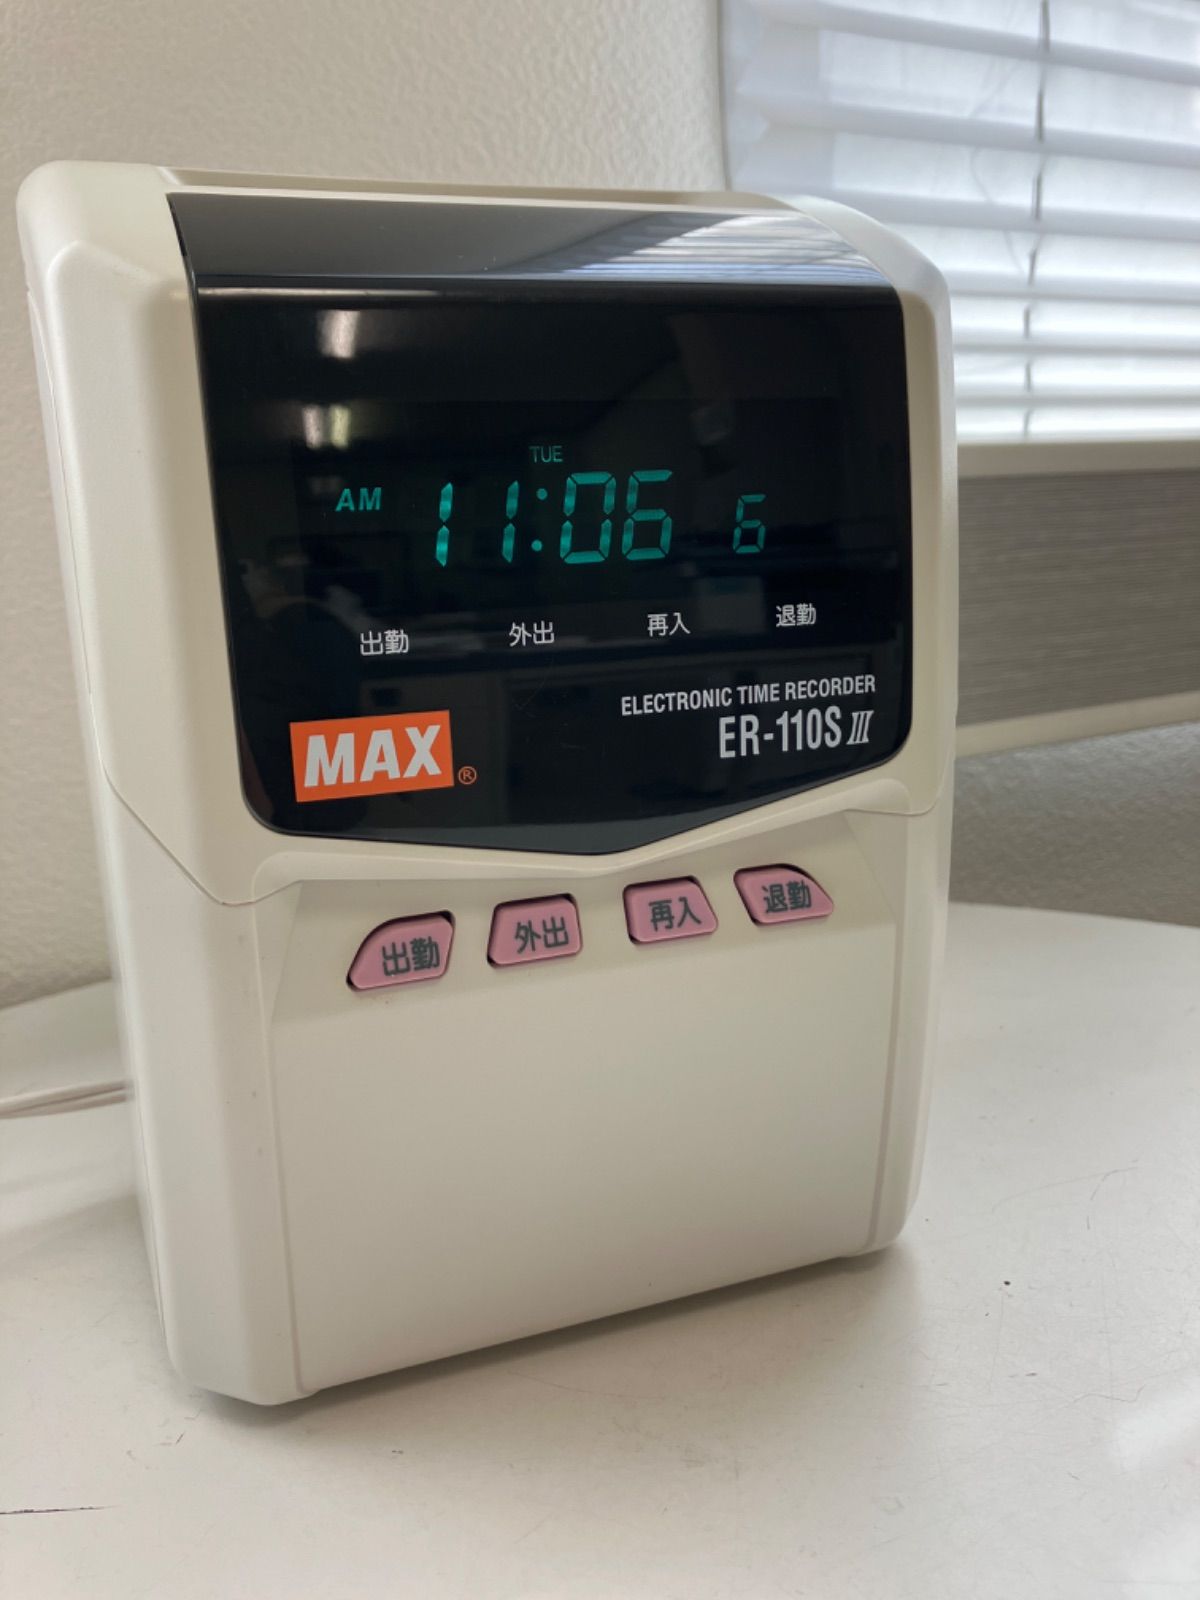 マックス タイムレコーダ 抗菌・抗ウイルス仕様 電波時計付き ER-110SUW AB - 2